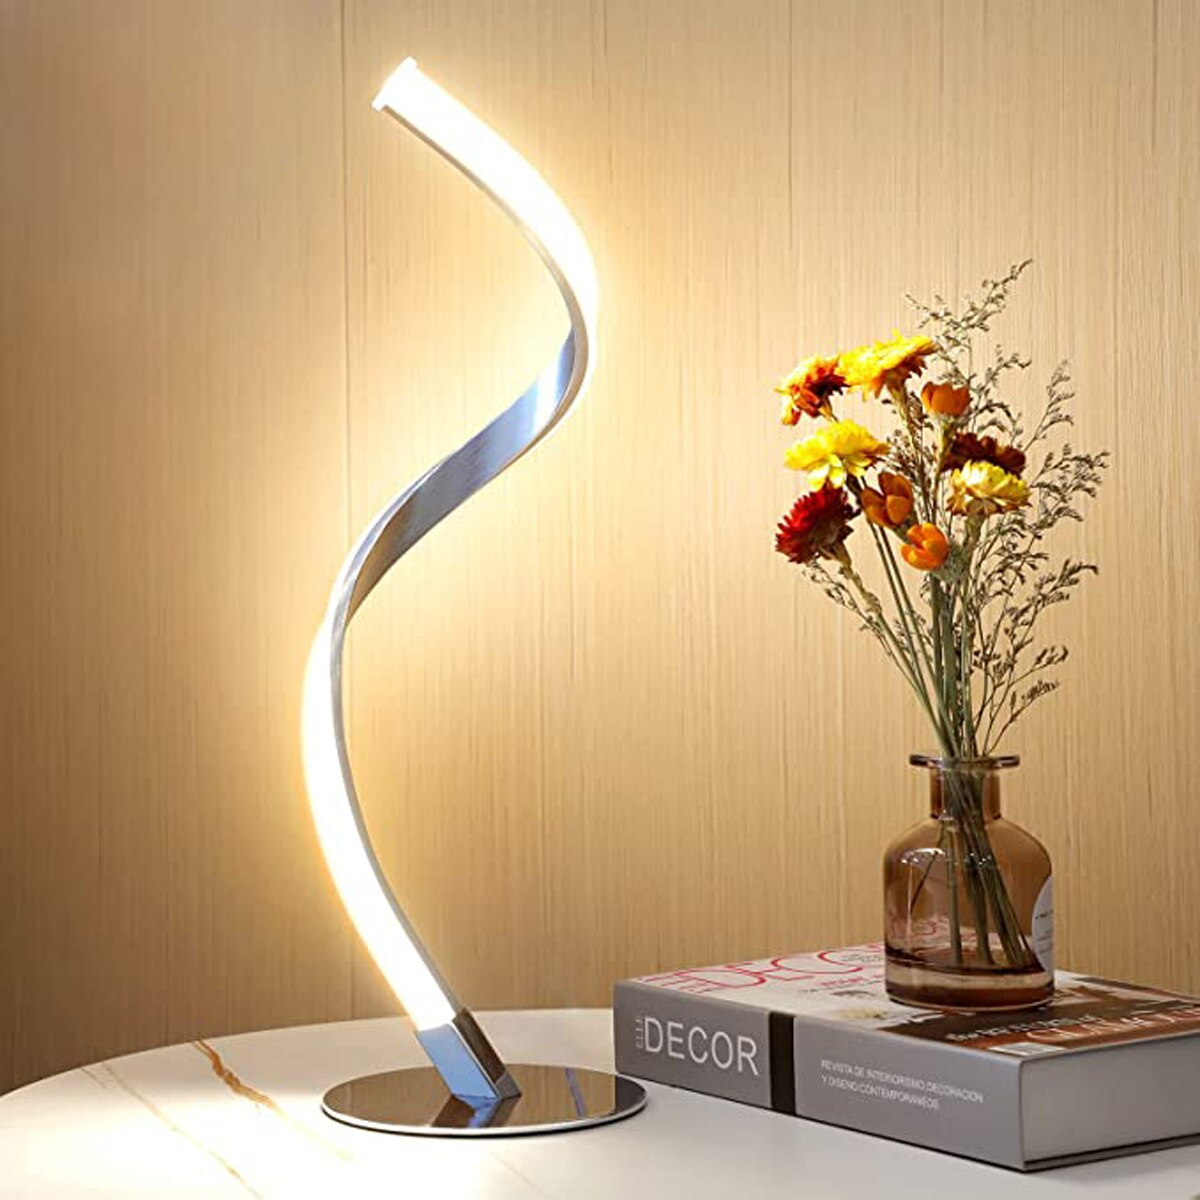 Unique Twist Table Lamp